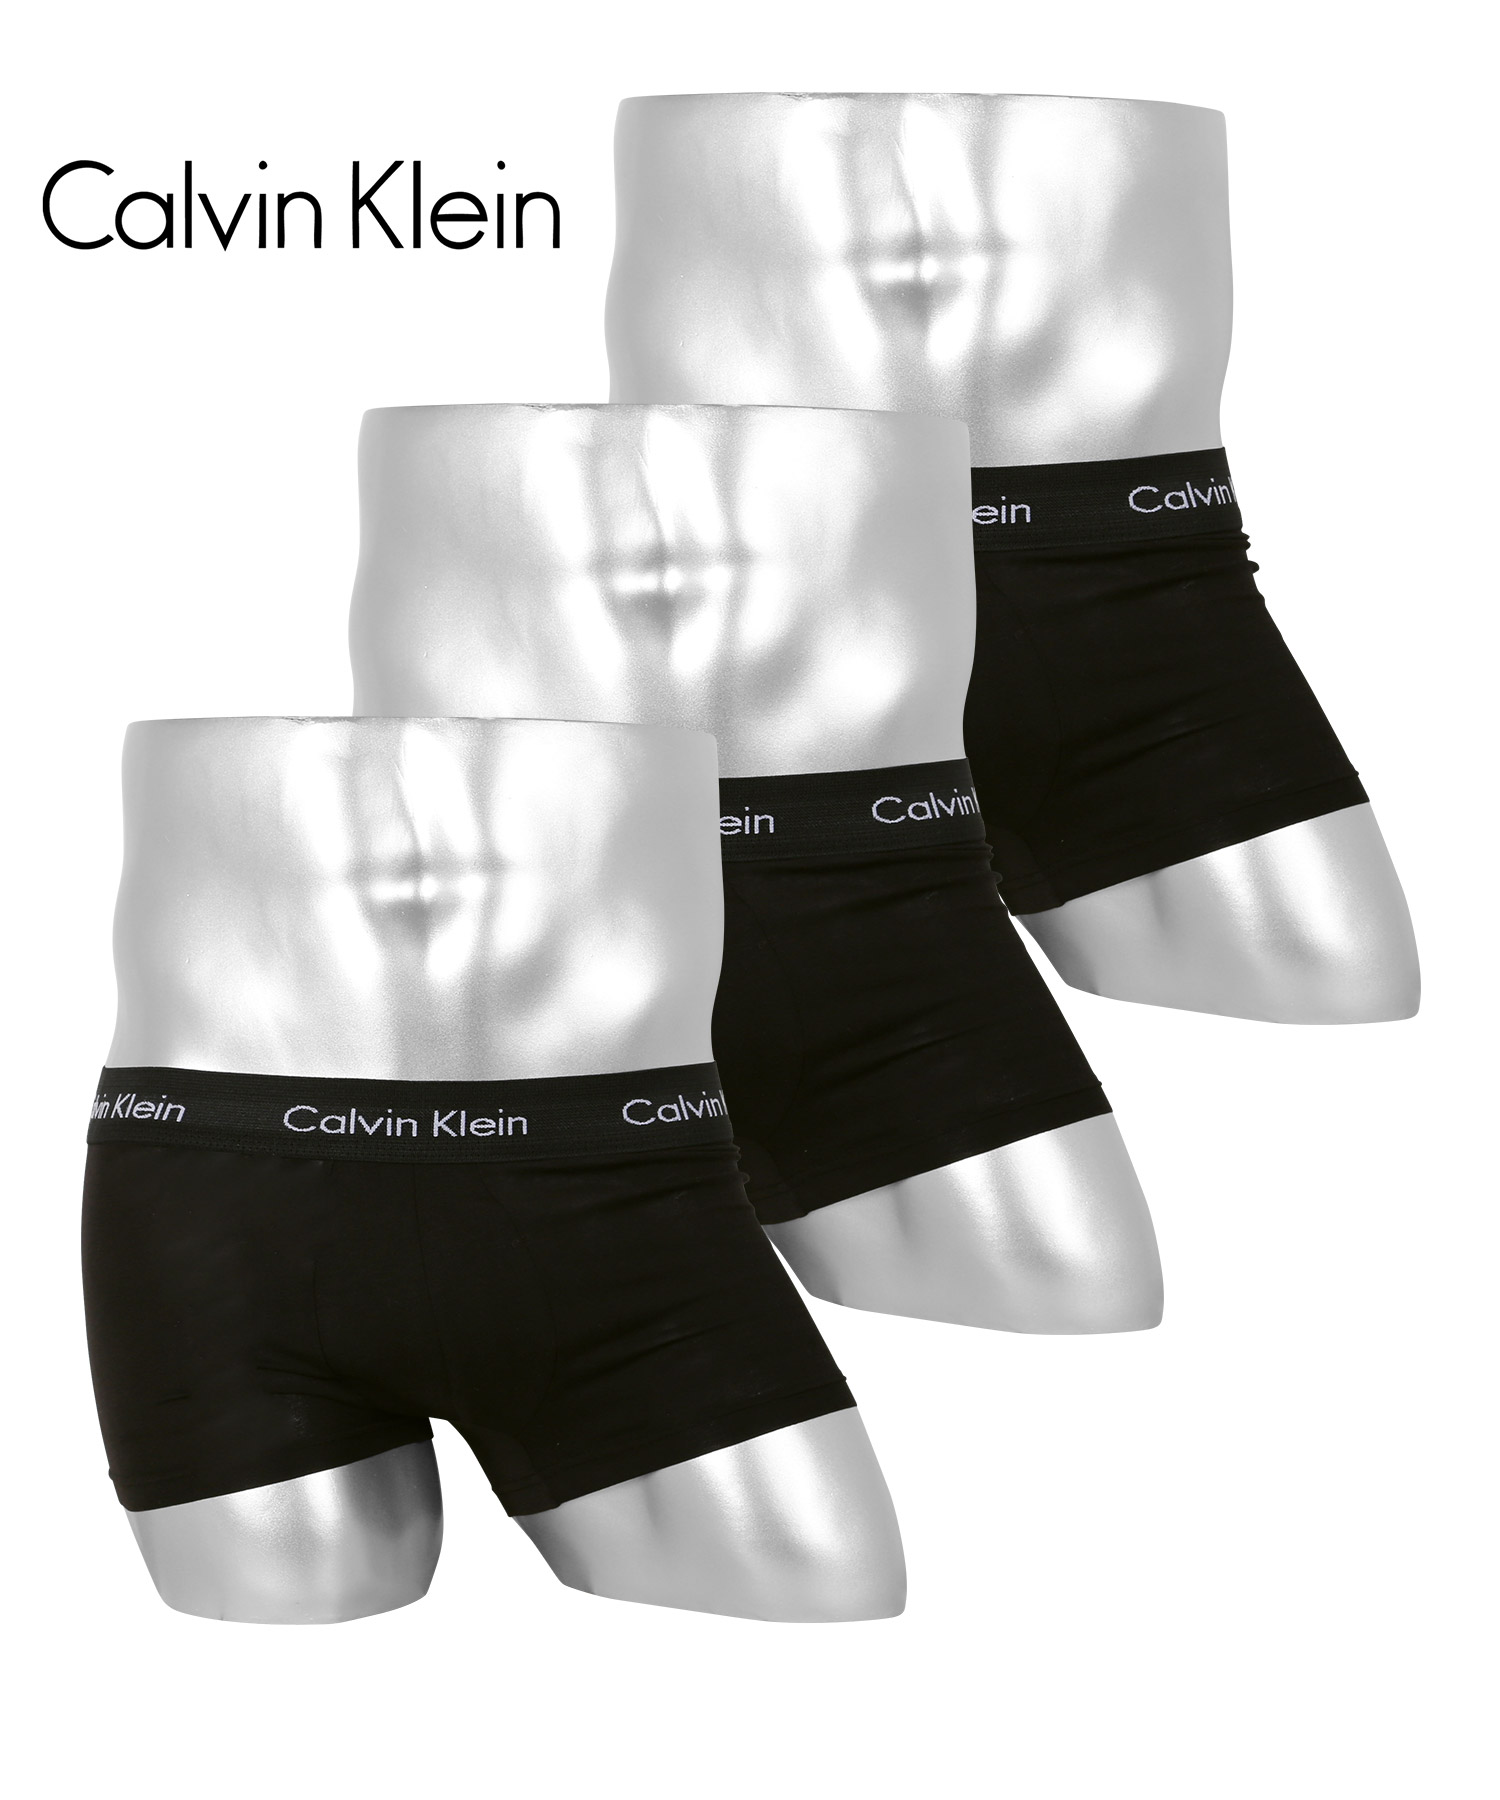 カルバンクライン ボクサーパンツ 3枚セット 3枚組 ローライズ ロング Calvin Klein メンズ アンダーウェア 男性下着 CK 高級  ハイブランド